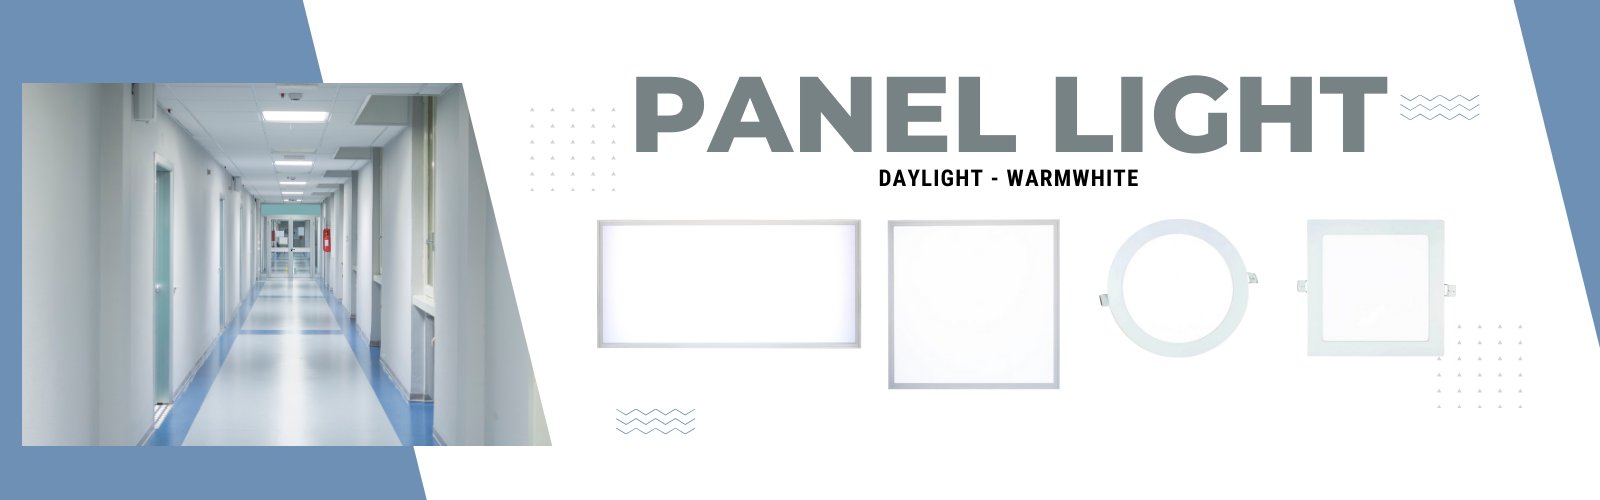 LED Panel Light Ecoshift Shopify